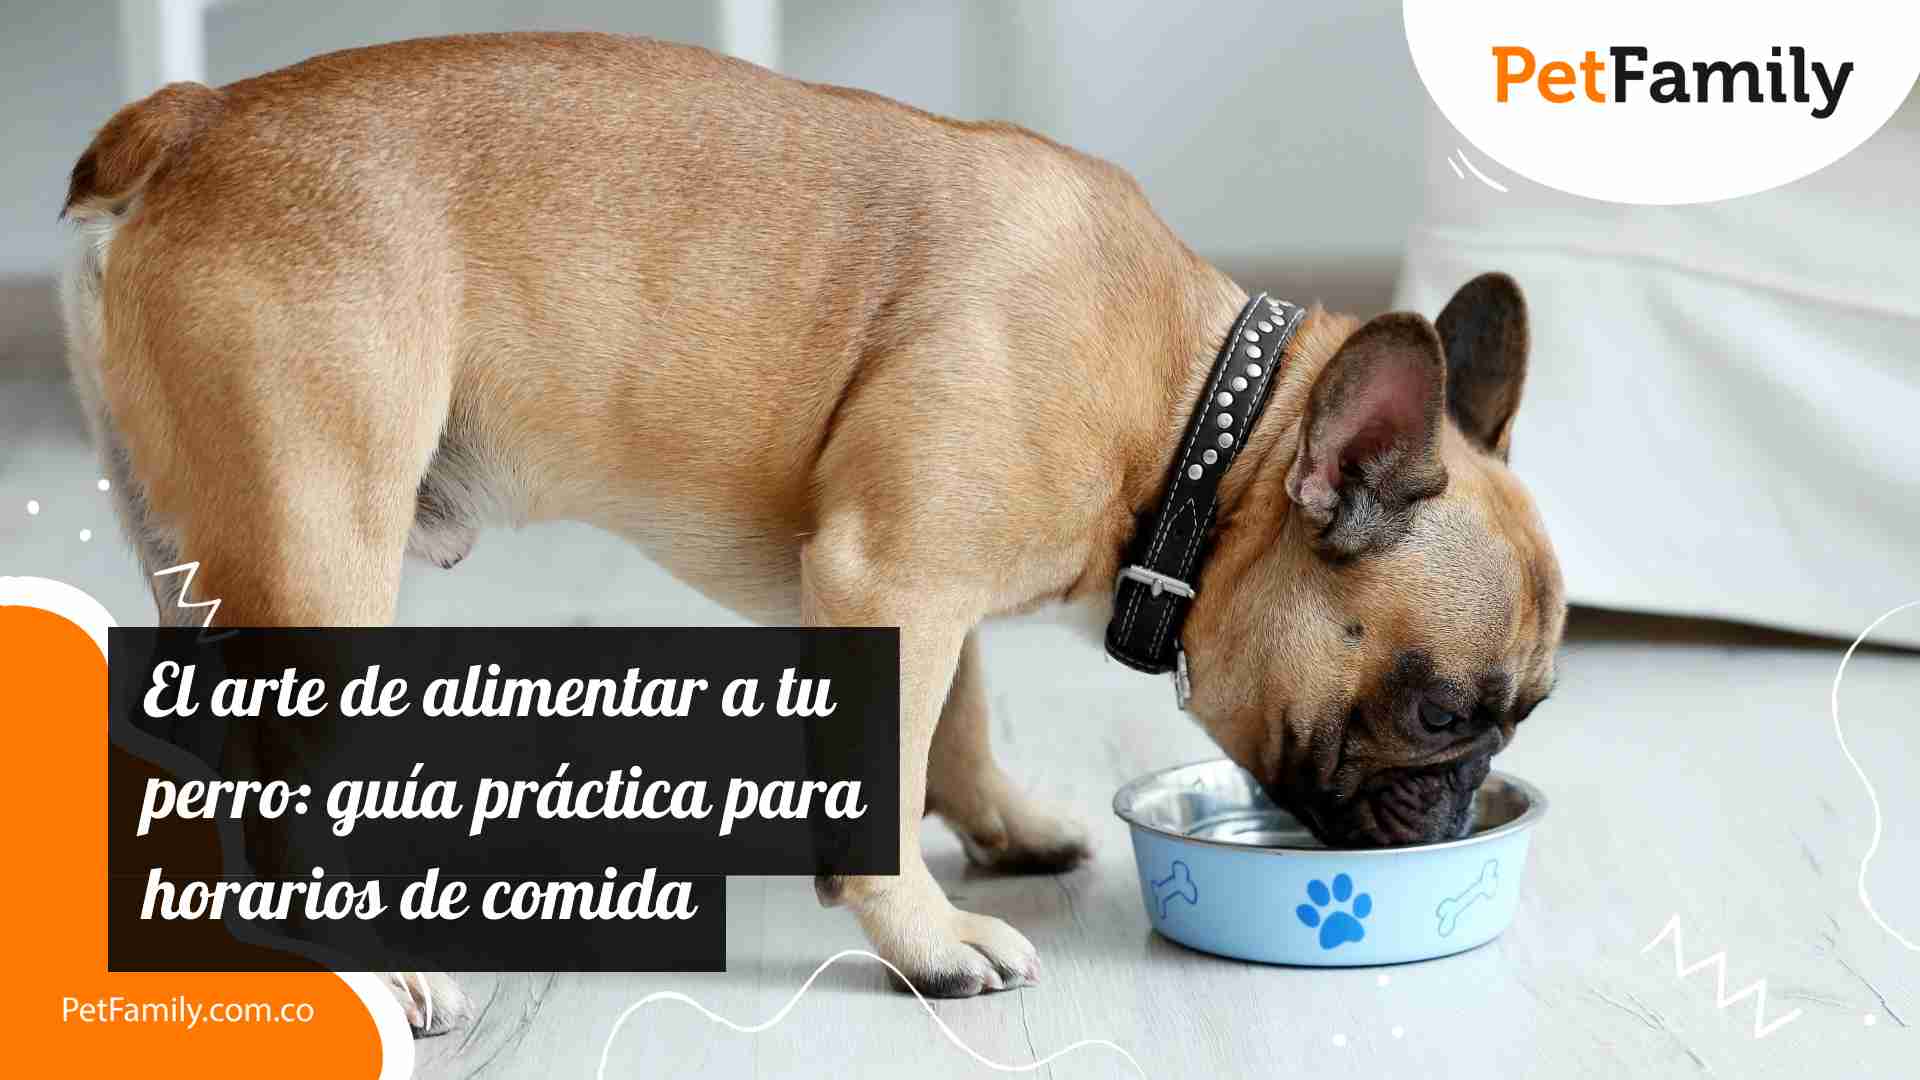 El arte de alimentar a tu perro: guía práctica para horarios de comida 